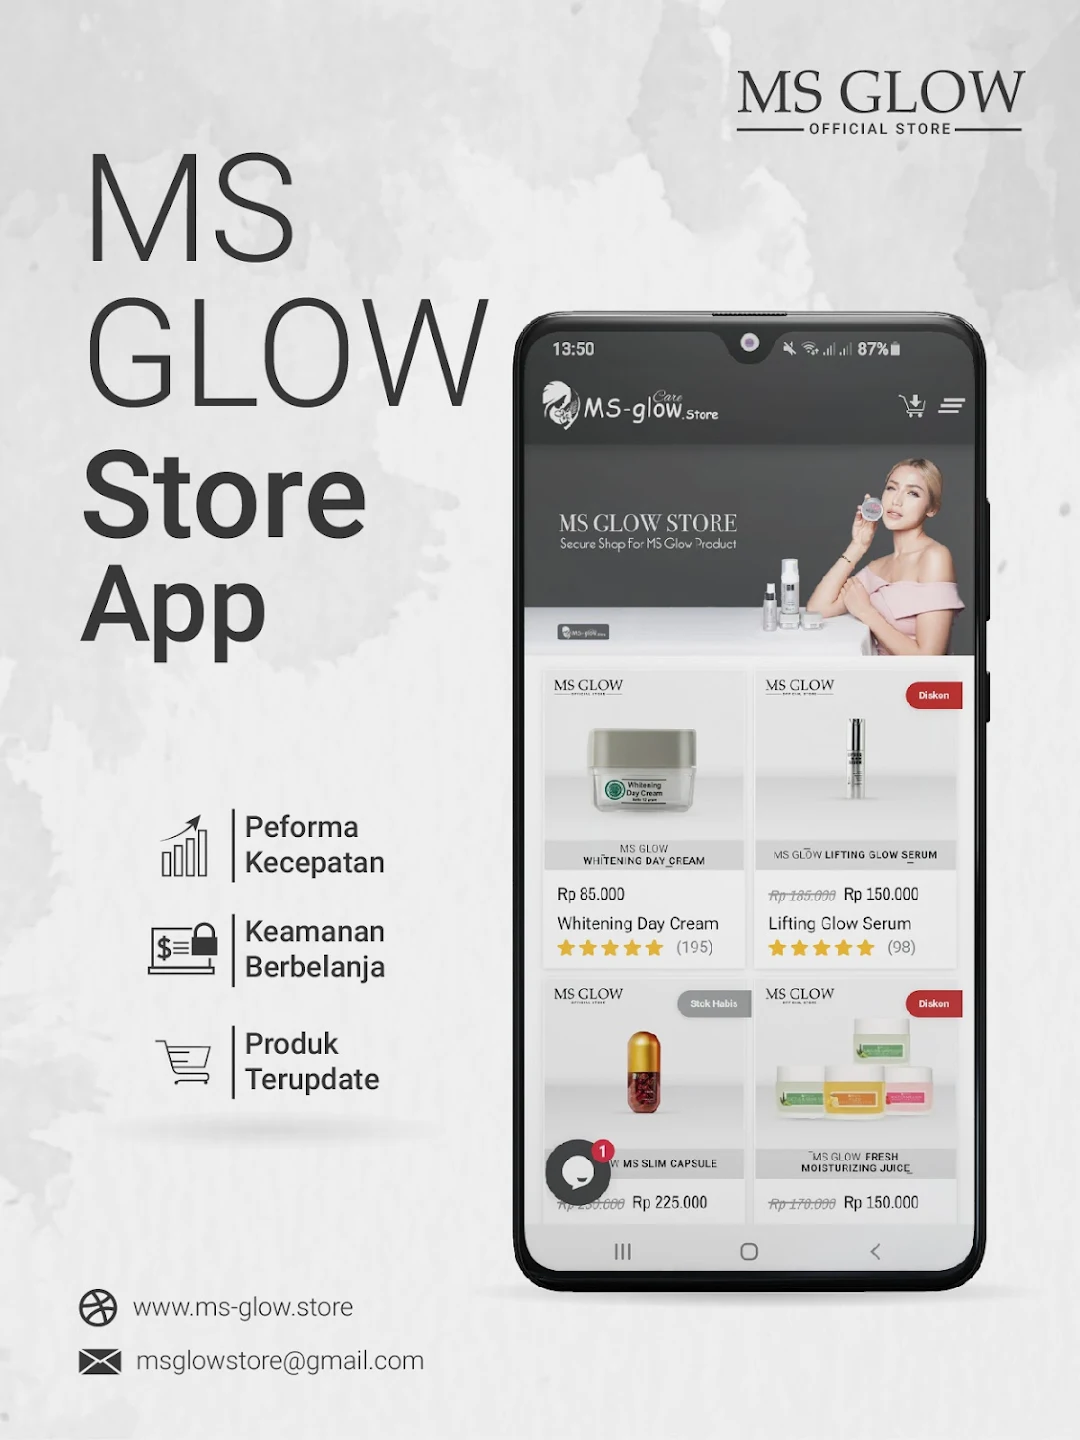 Cara menjadi member MS Glow